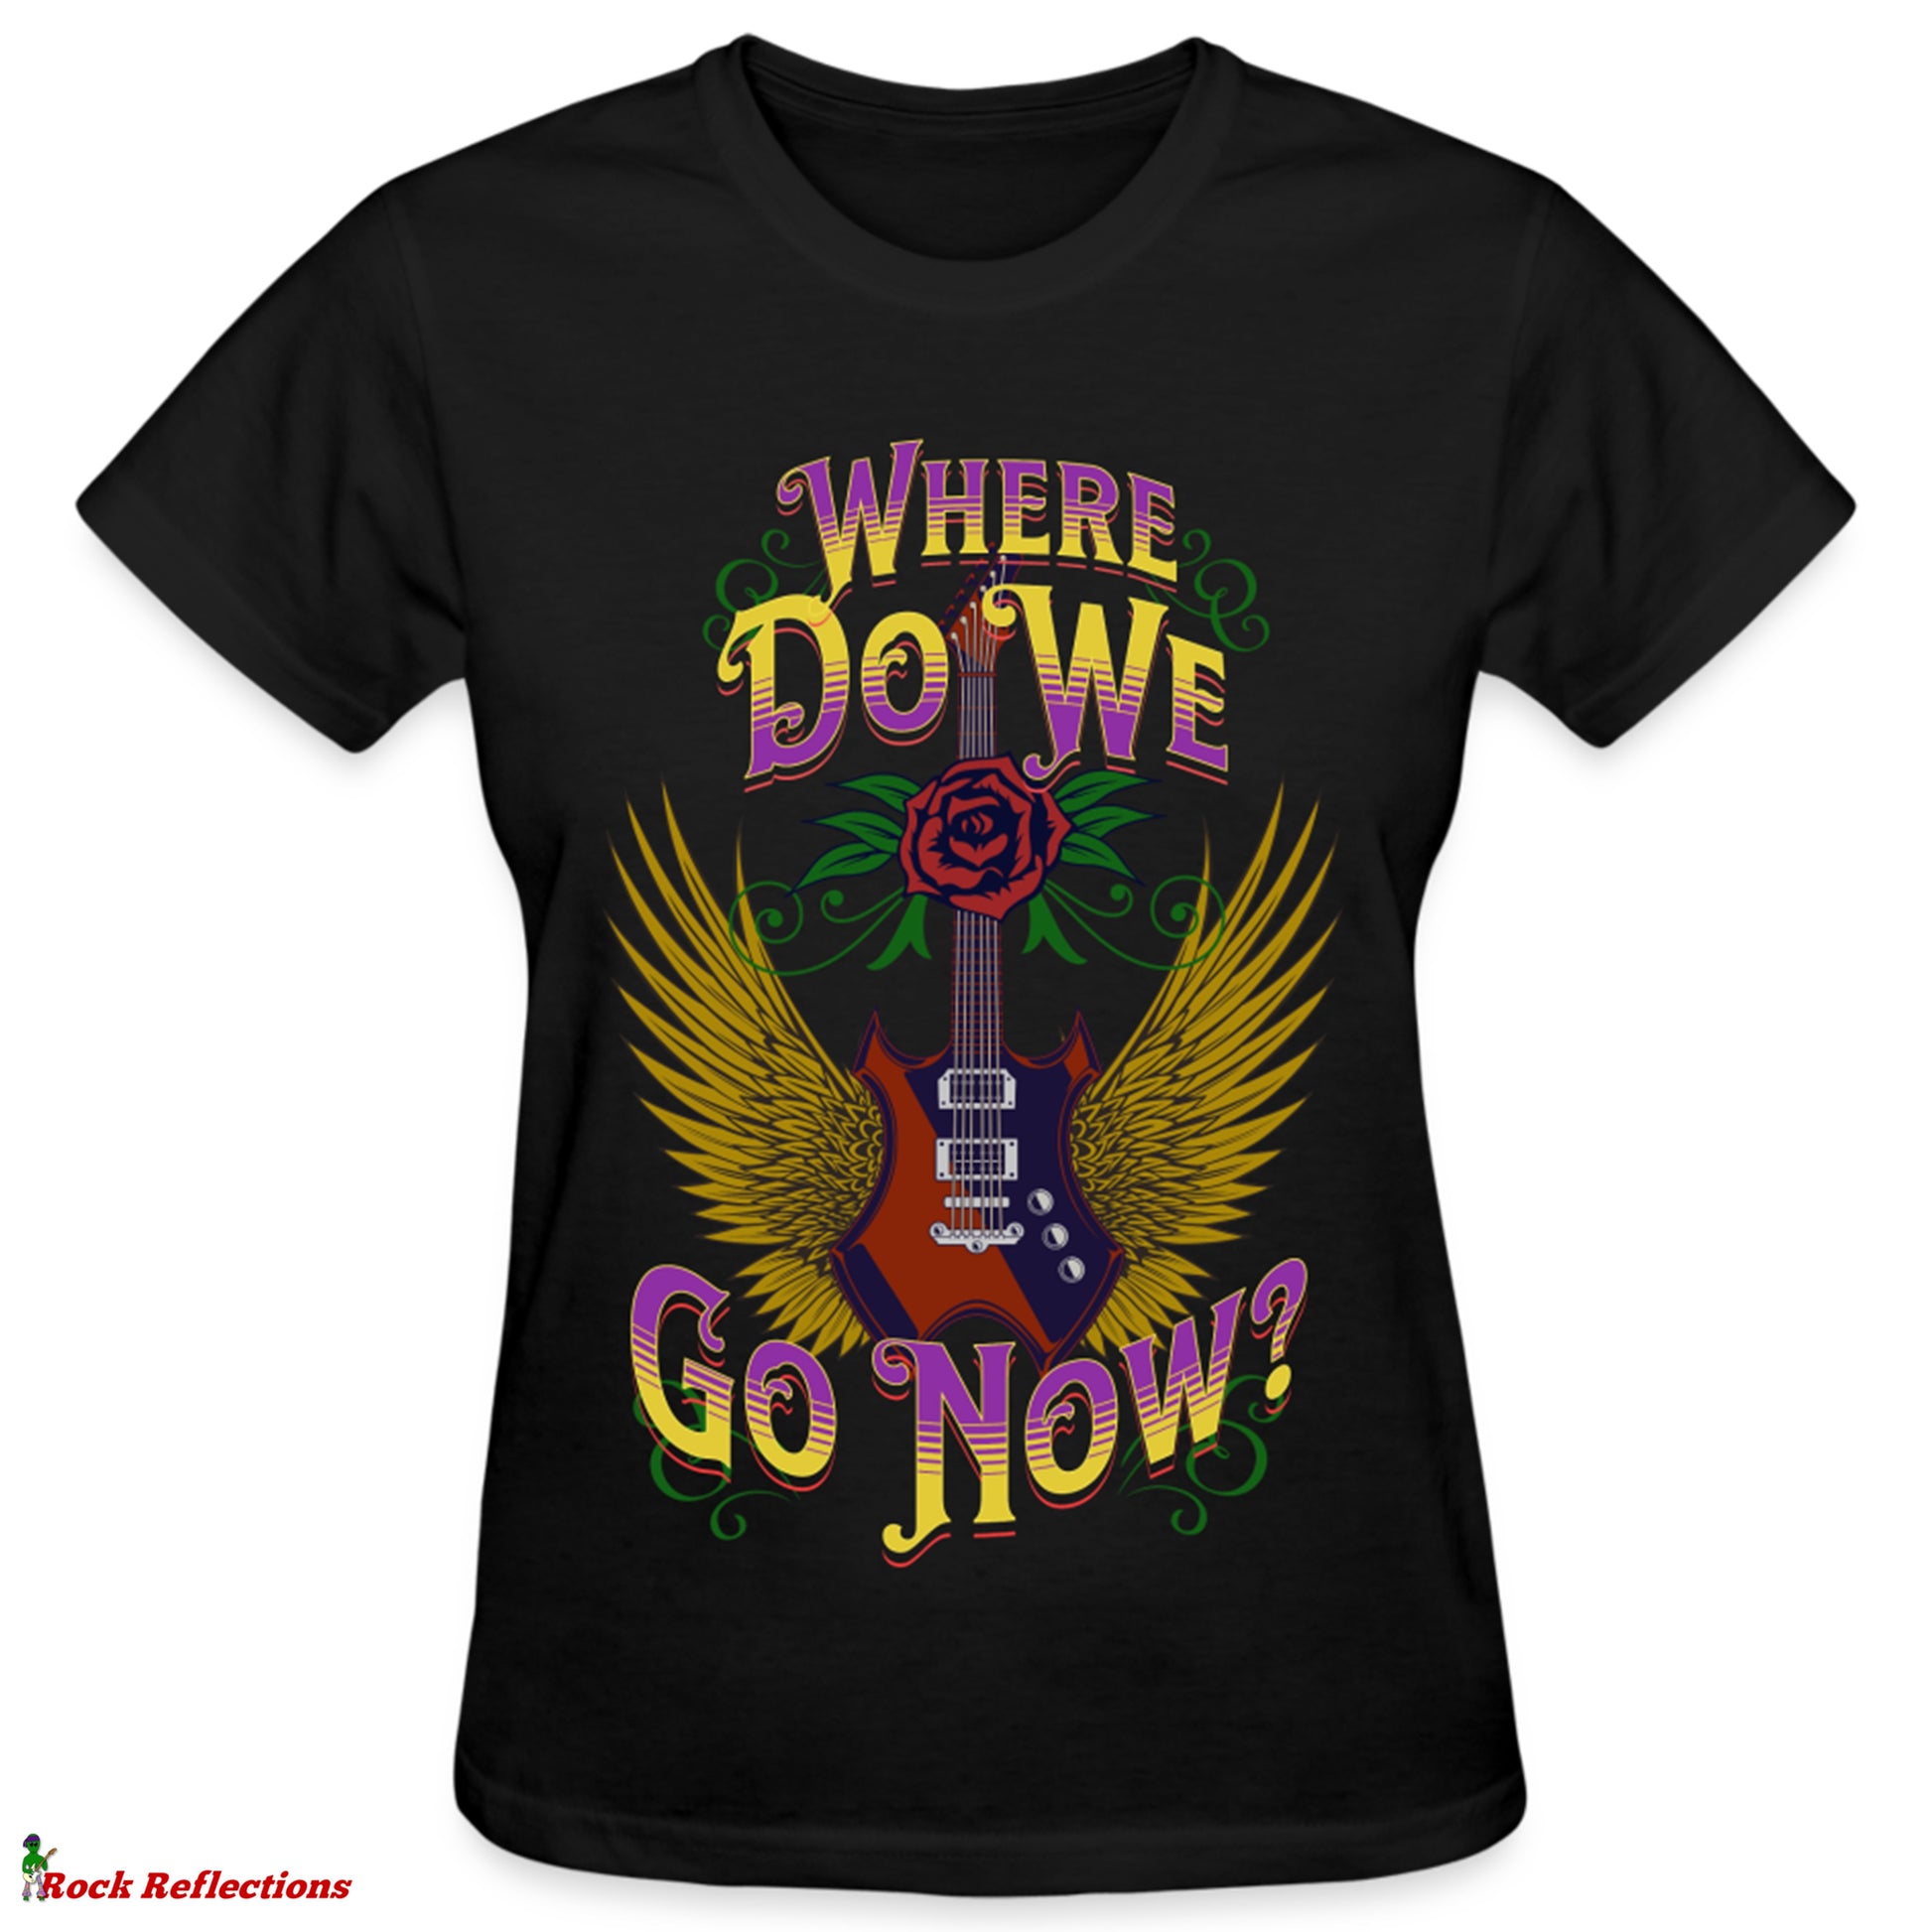 Where Do We Go Now? T-Shirt SPOD